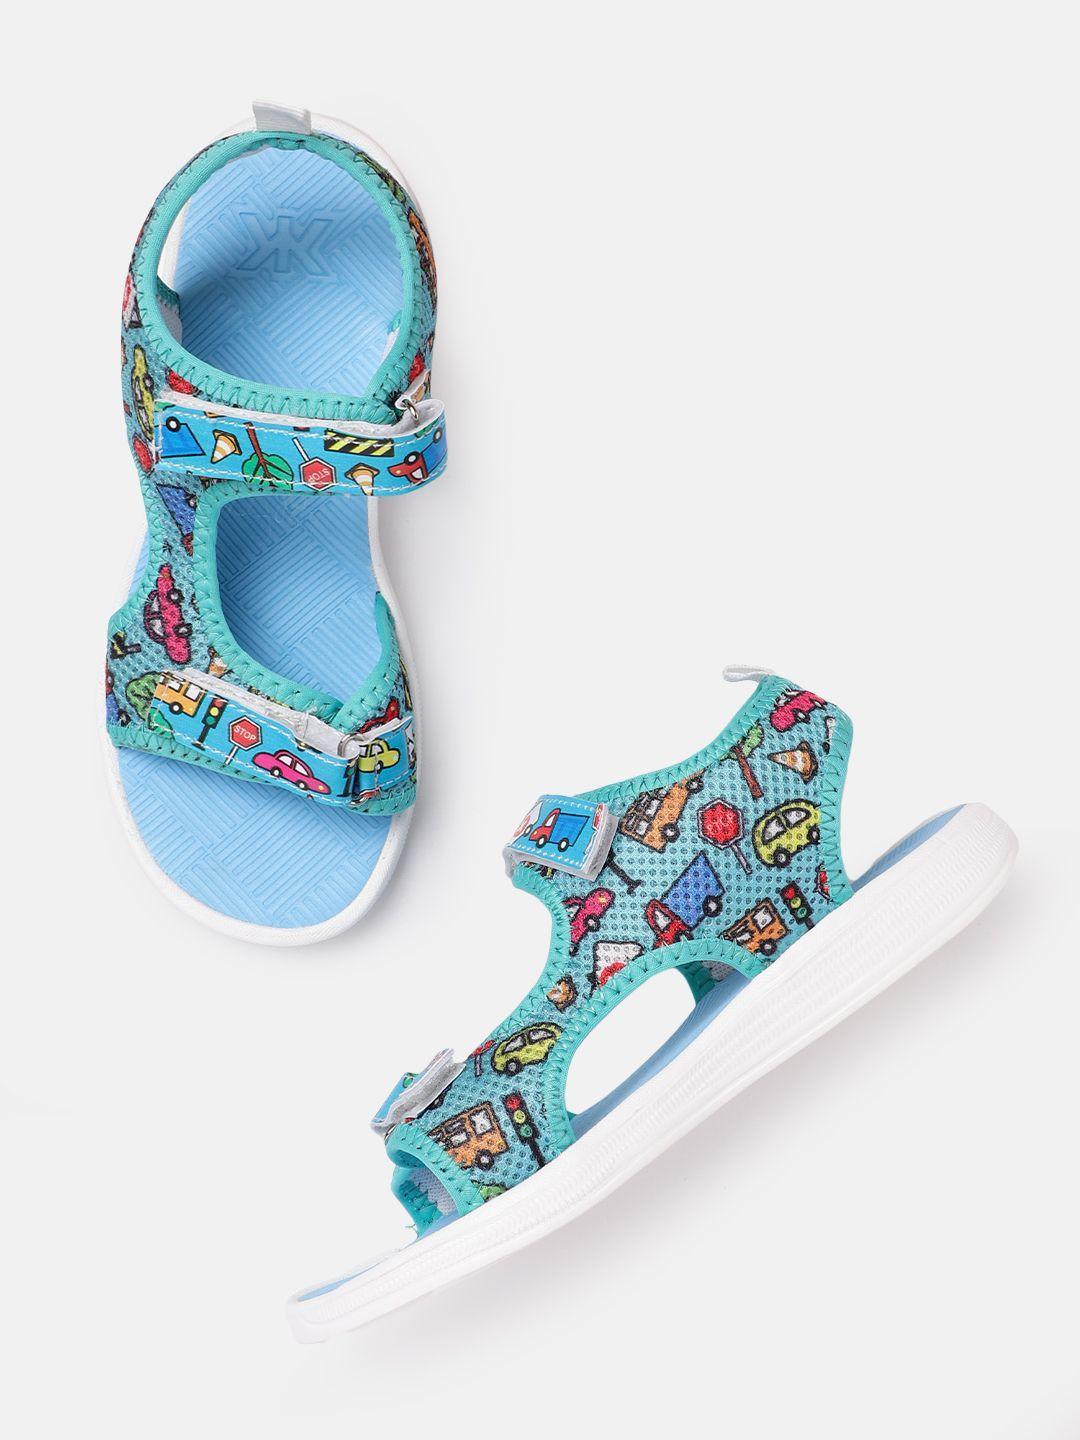 kook n keech women printed & woven design sports sandals